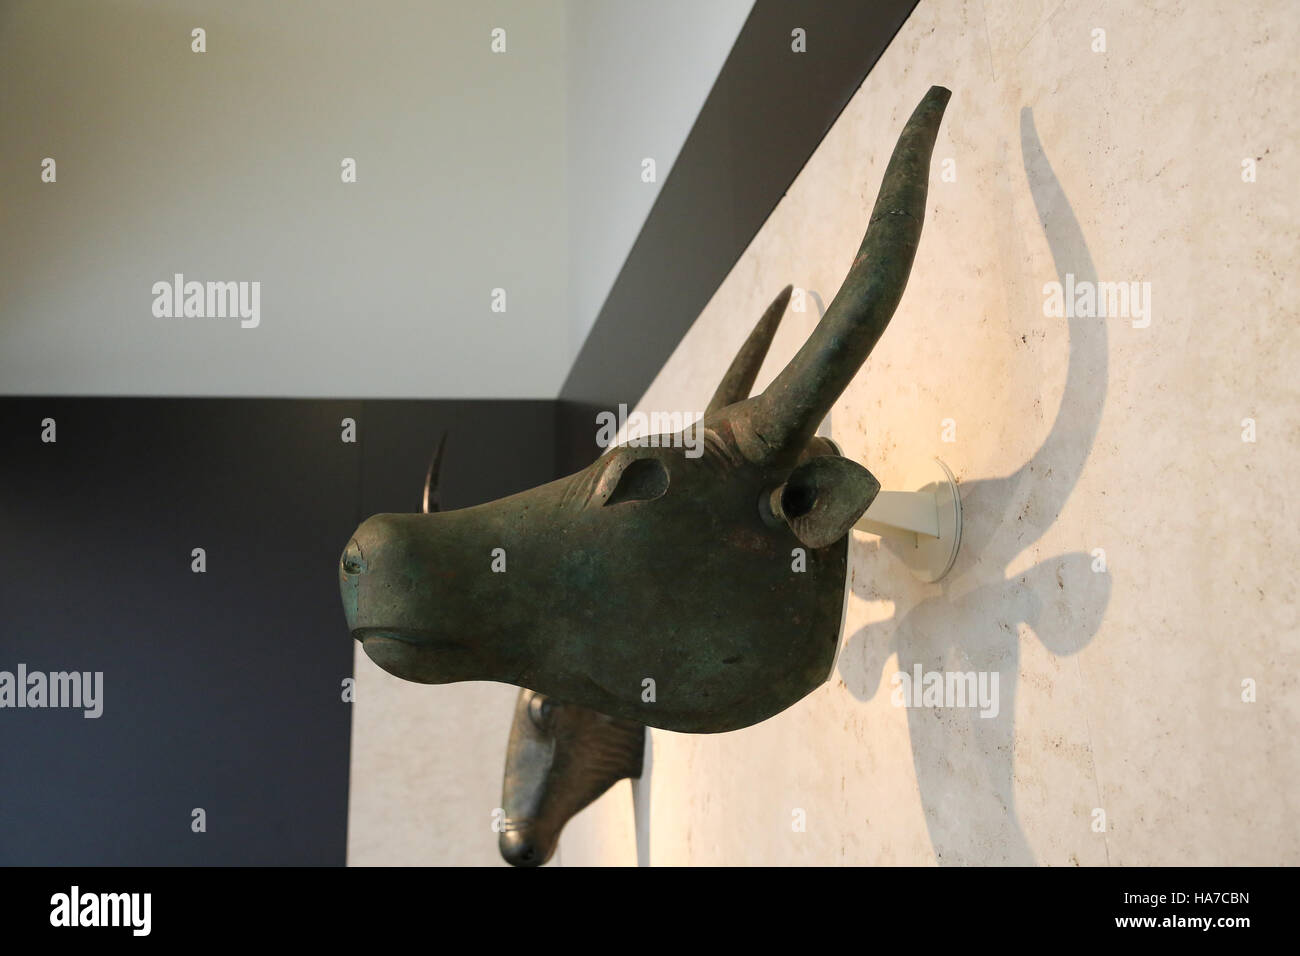 Stiere von Costitx. 500 V. CHR. - 200 BC. Eisenzeit. Material: Bronze. Schrein von Predio de Son Corro, Costitx, Mallorca, Spanien. Nationales Archäologisches Museum, Stockfoto